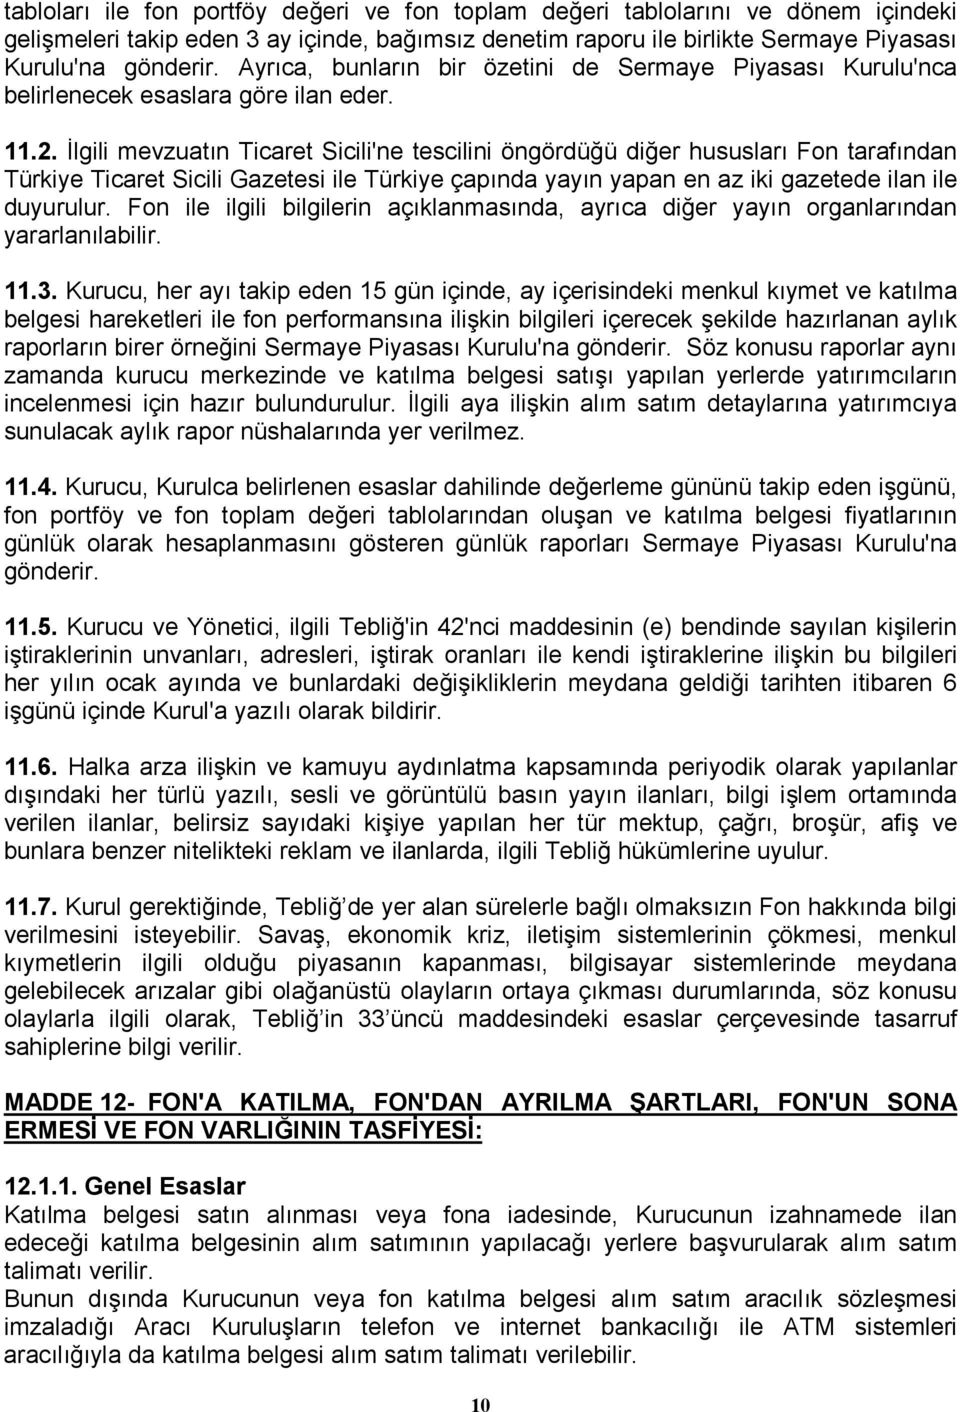 Đlgili mevzuatın Ticaret Sicili'ne tescilini öngördüğü diğer hususları Fon tarafından Türkiye Ticaret Sicili Gazetesi ile Türkiye çapında yayın yapan en az iki gazetede ilan ile duyurulur.